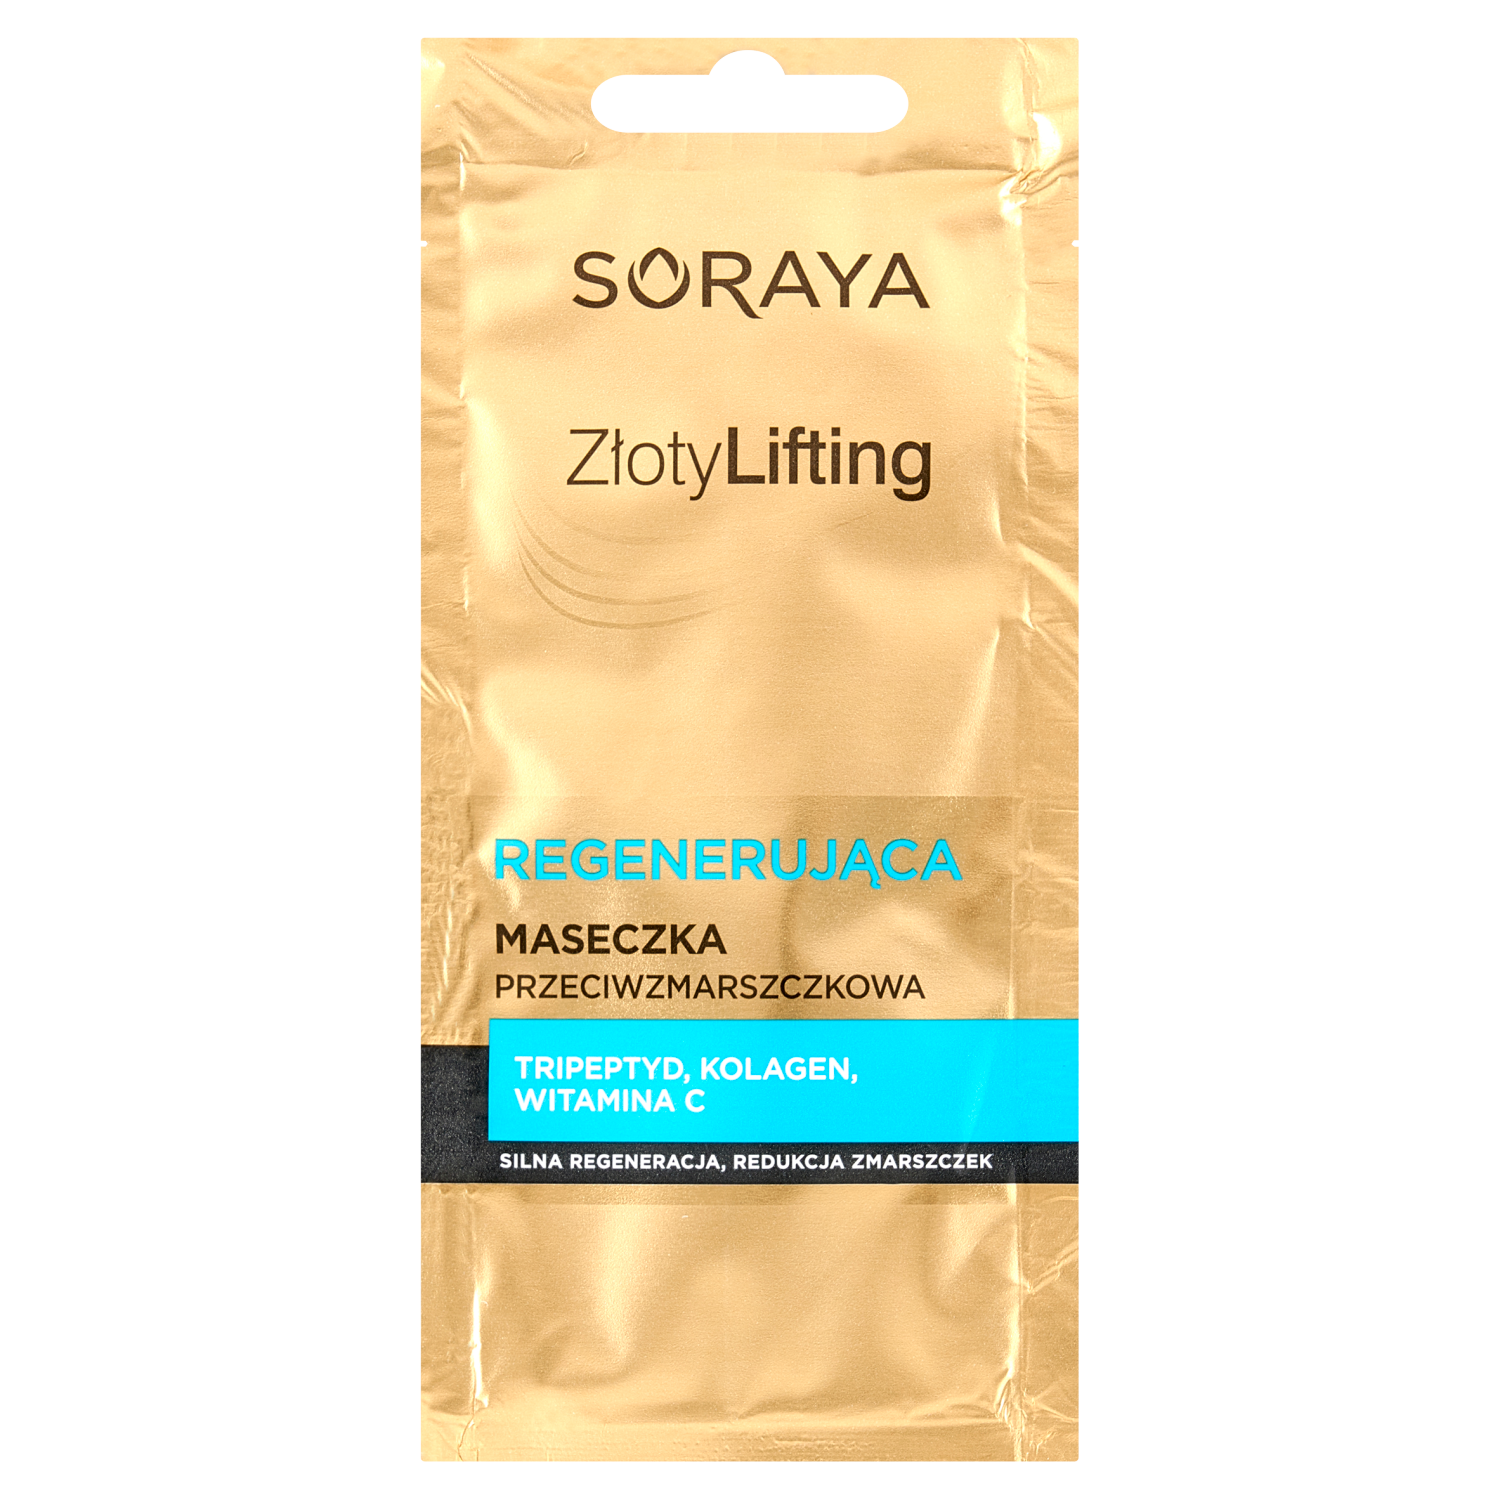 Регенерирующая маска для лица против морщин Soraya Złoty Lifting, 8 мл